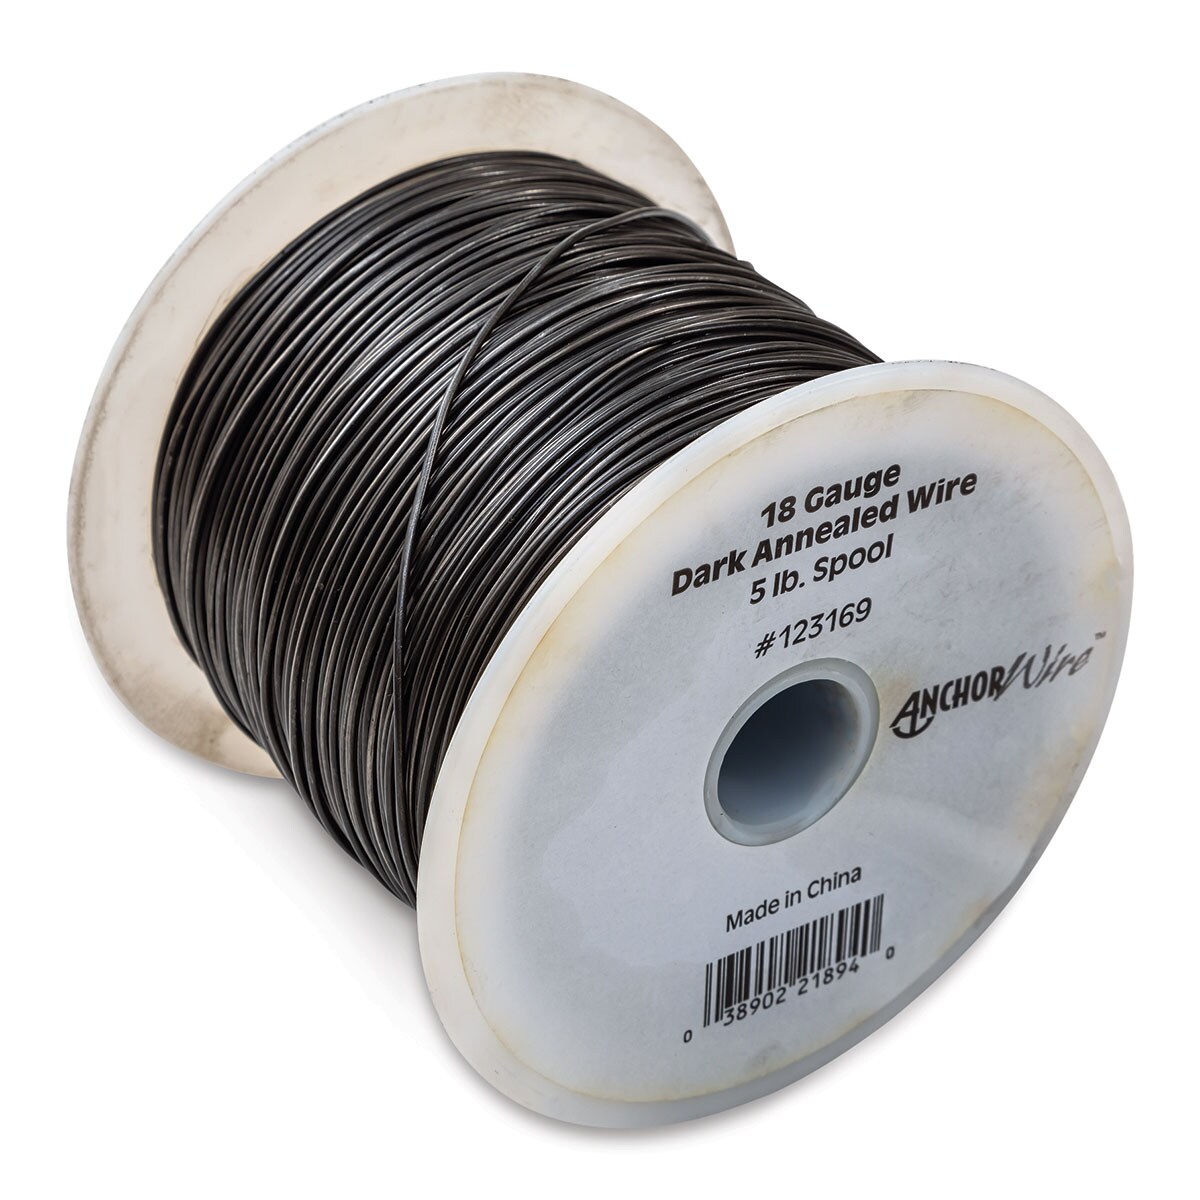 Ook Dark Annealed Wire - 18 Gauge, 830 ft spool